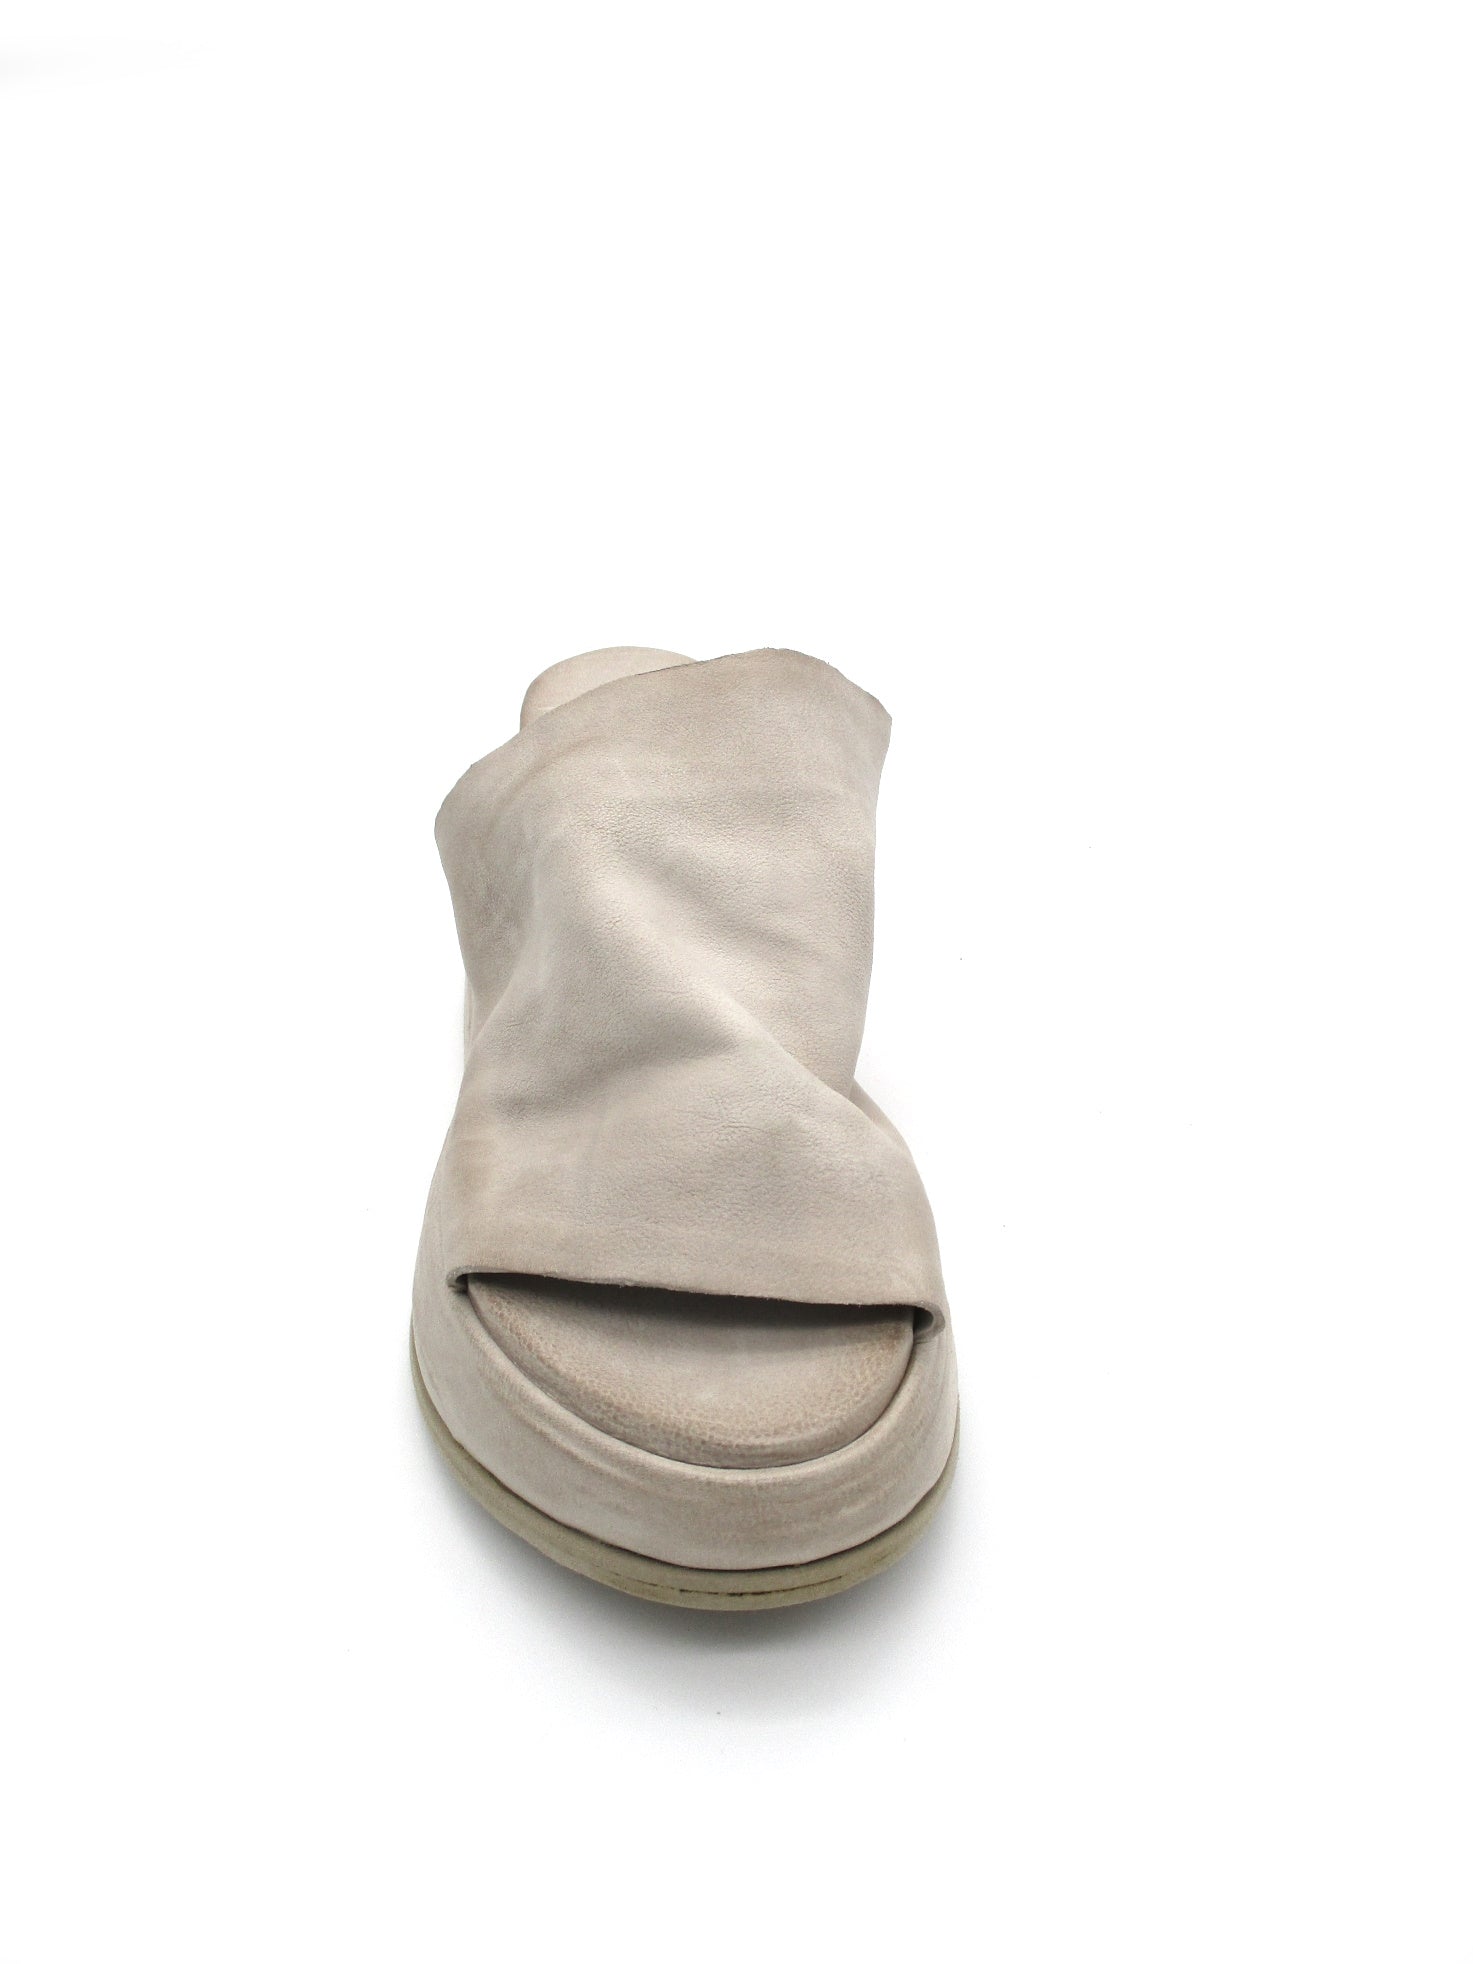 Sandalo in pelle zeppa donna As98 Reale Dust - B27003 -